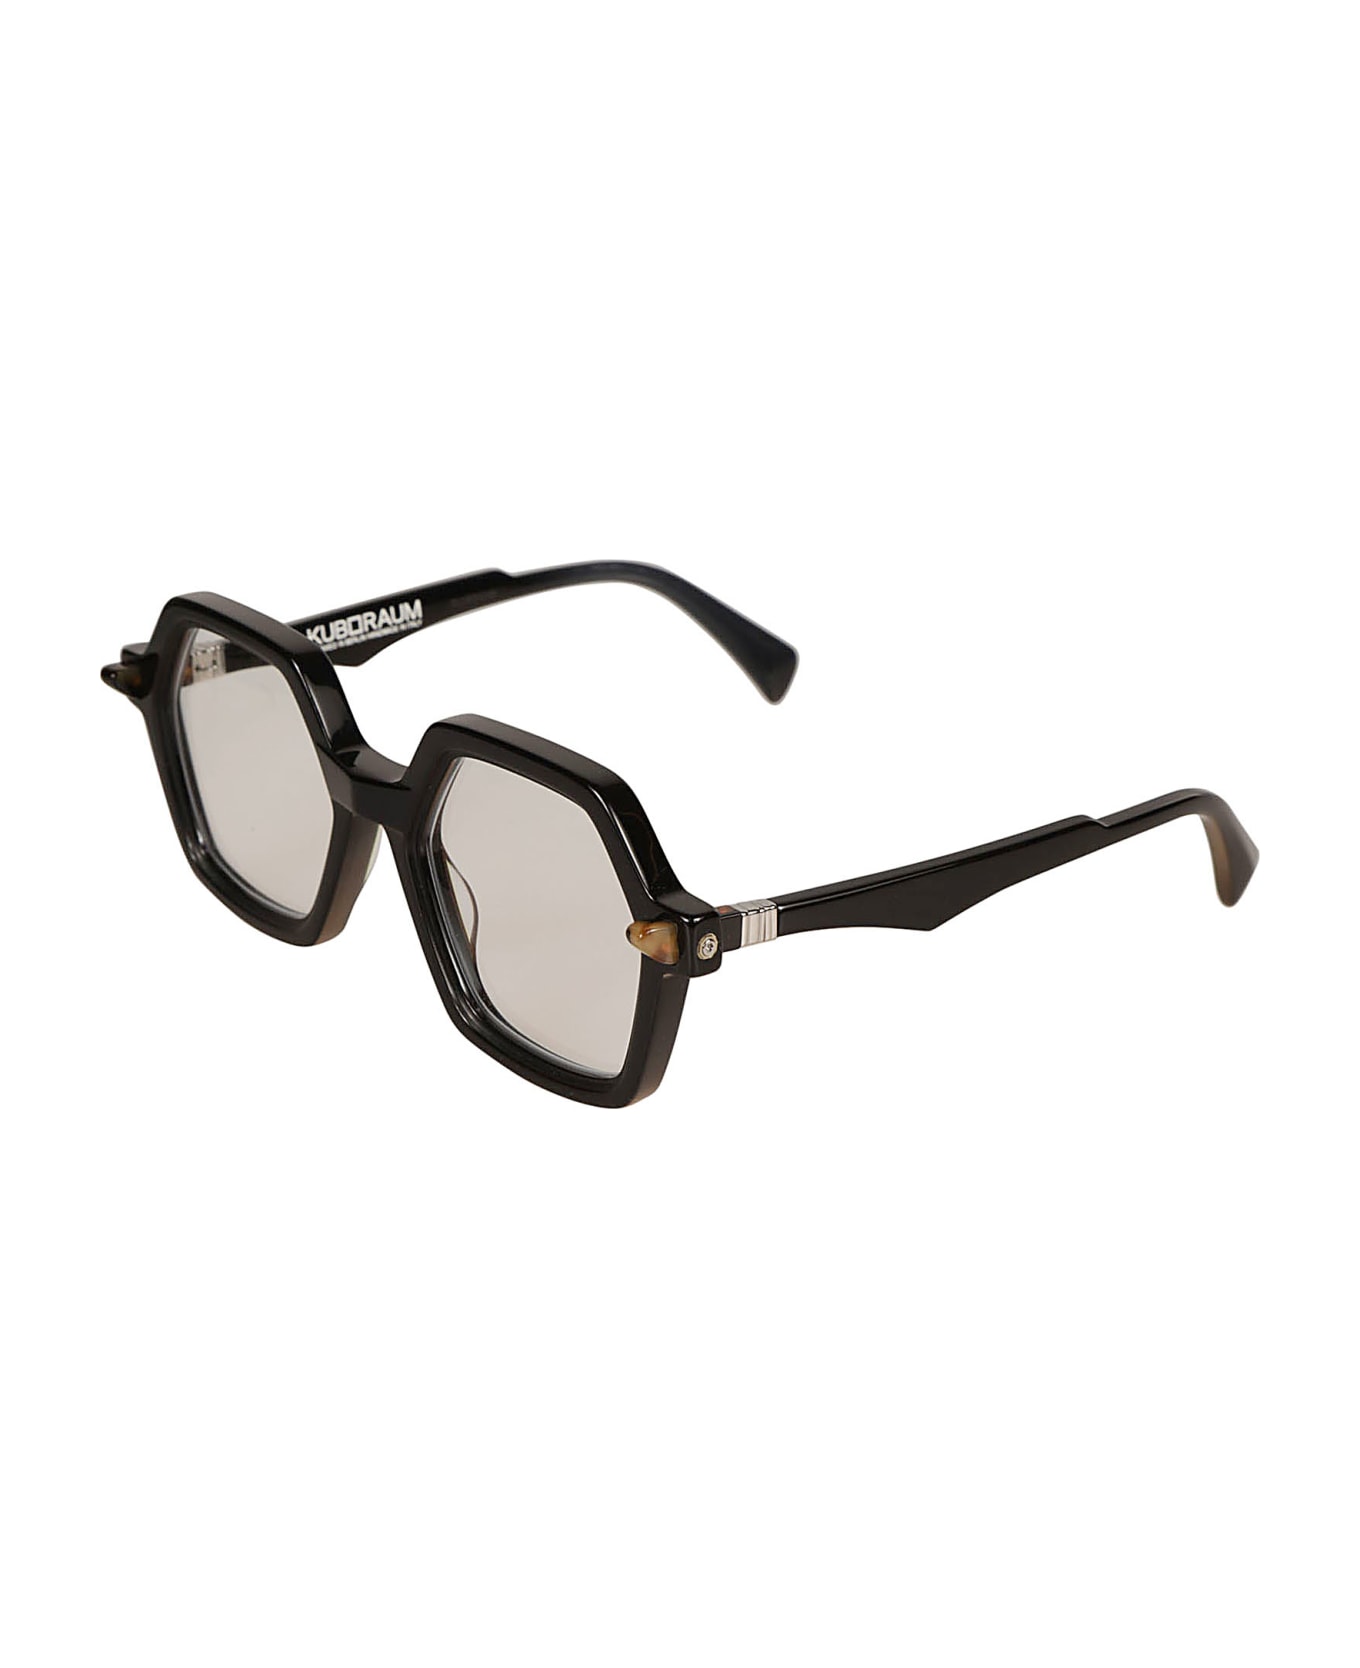 Kuboraum Q8 Glasses Glasses - black-gold